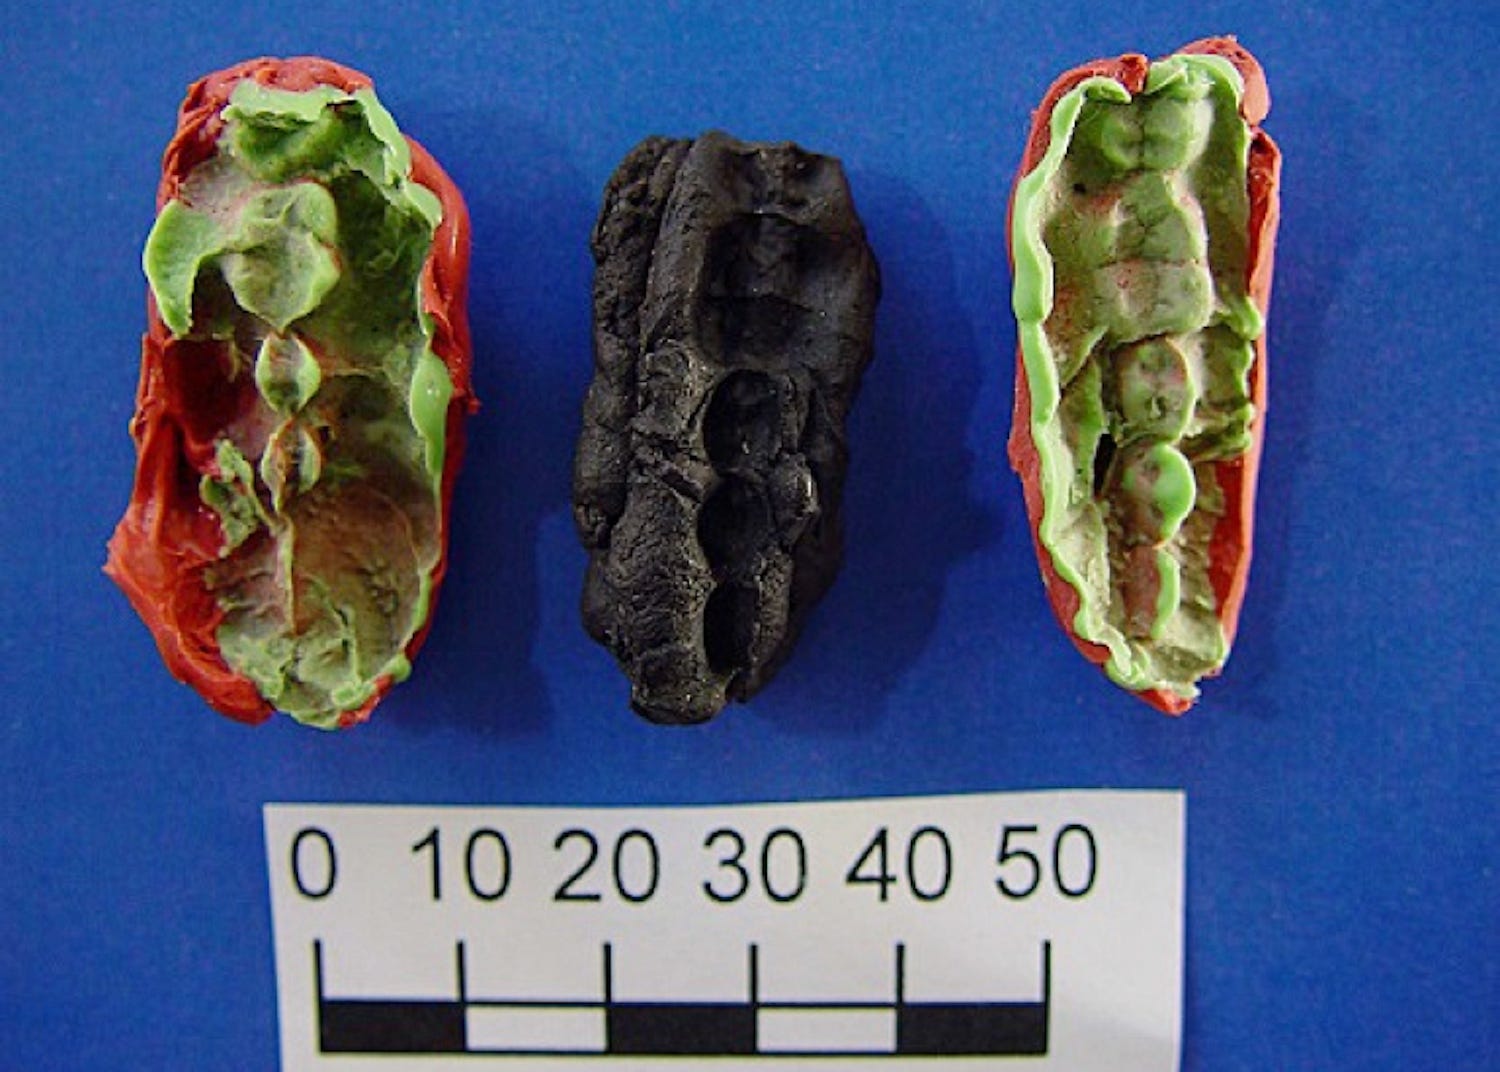 10.000 jahre altes kaugummi steckt voller hinweise darauf, was steinzeit-teenager aßen